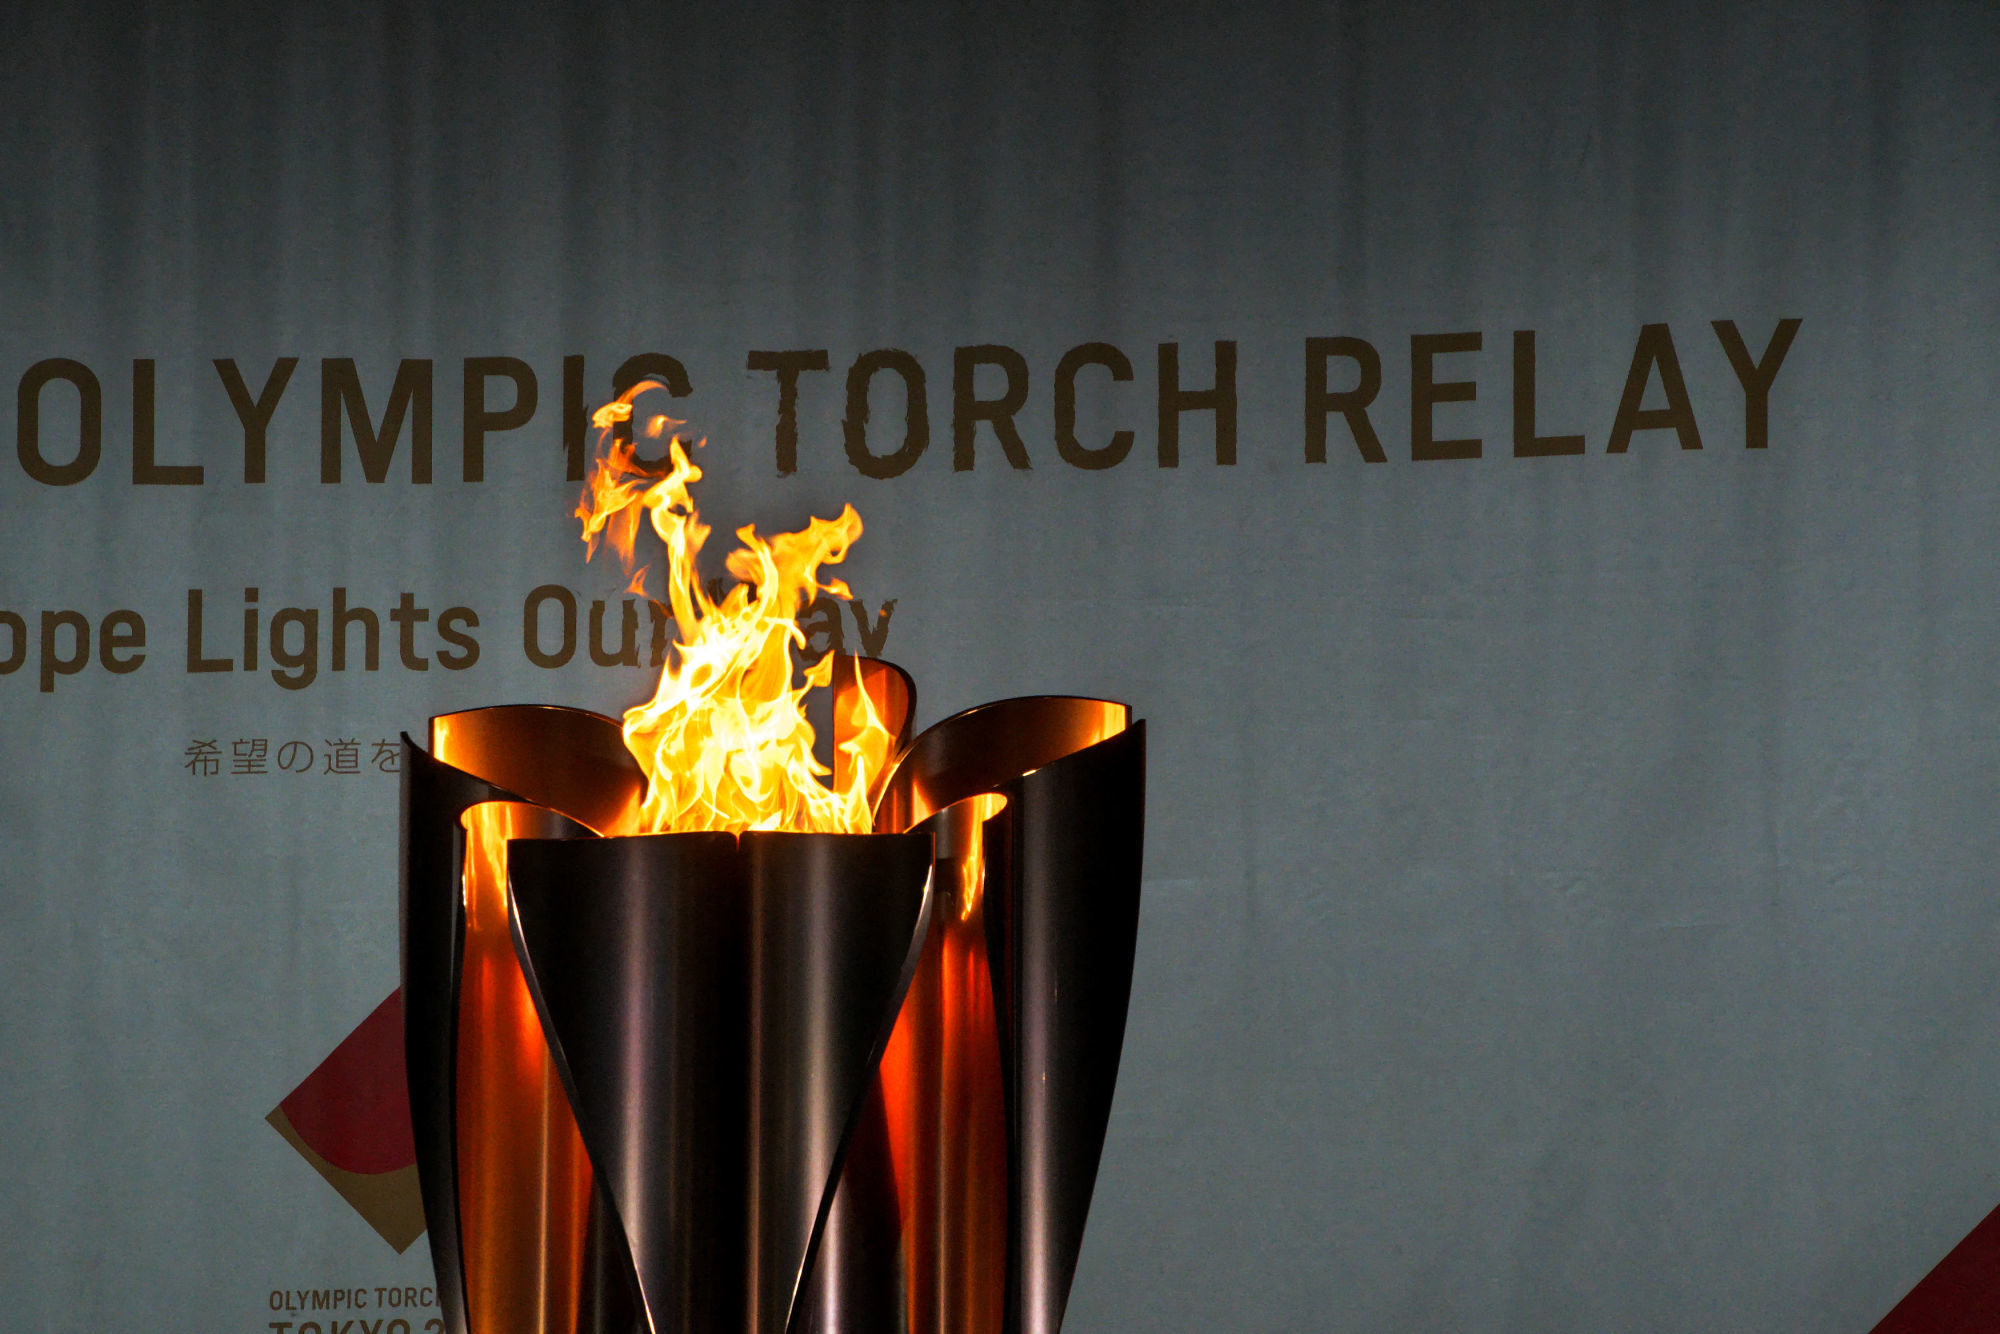 JO de Paris 2024 : la flamme olympique passera le 12 juillet en Côte-d'Or